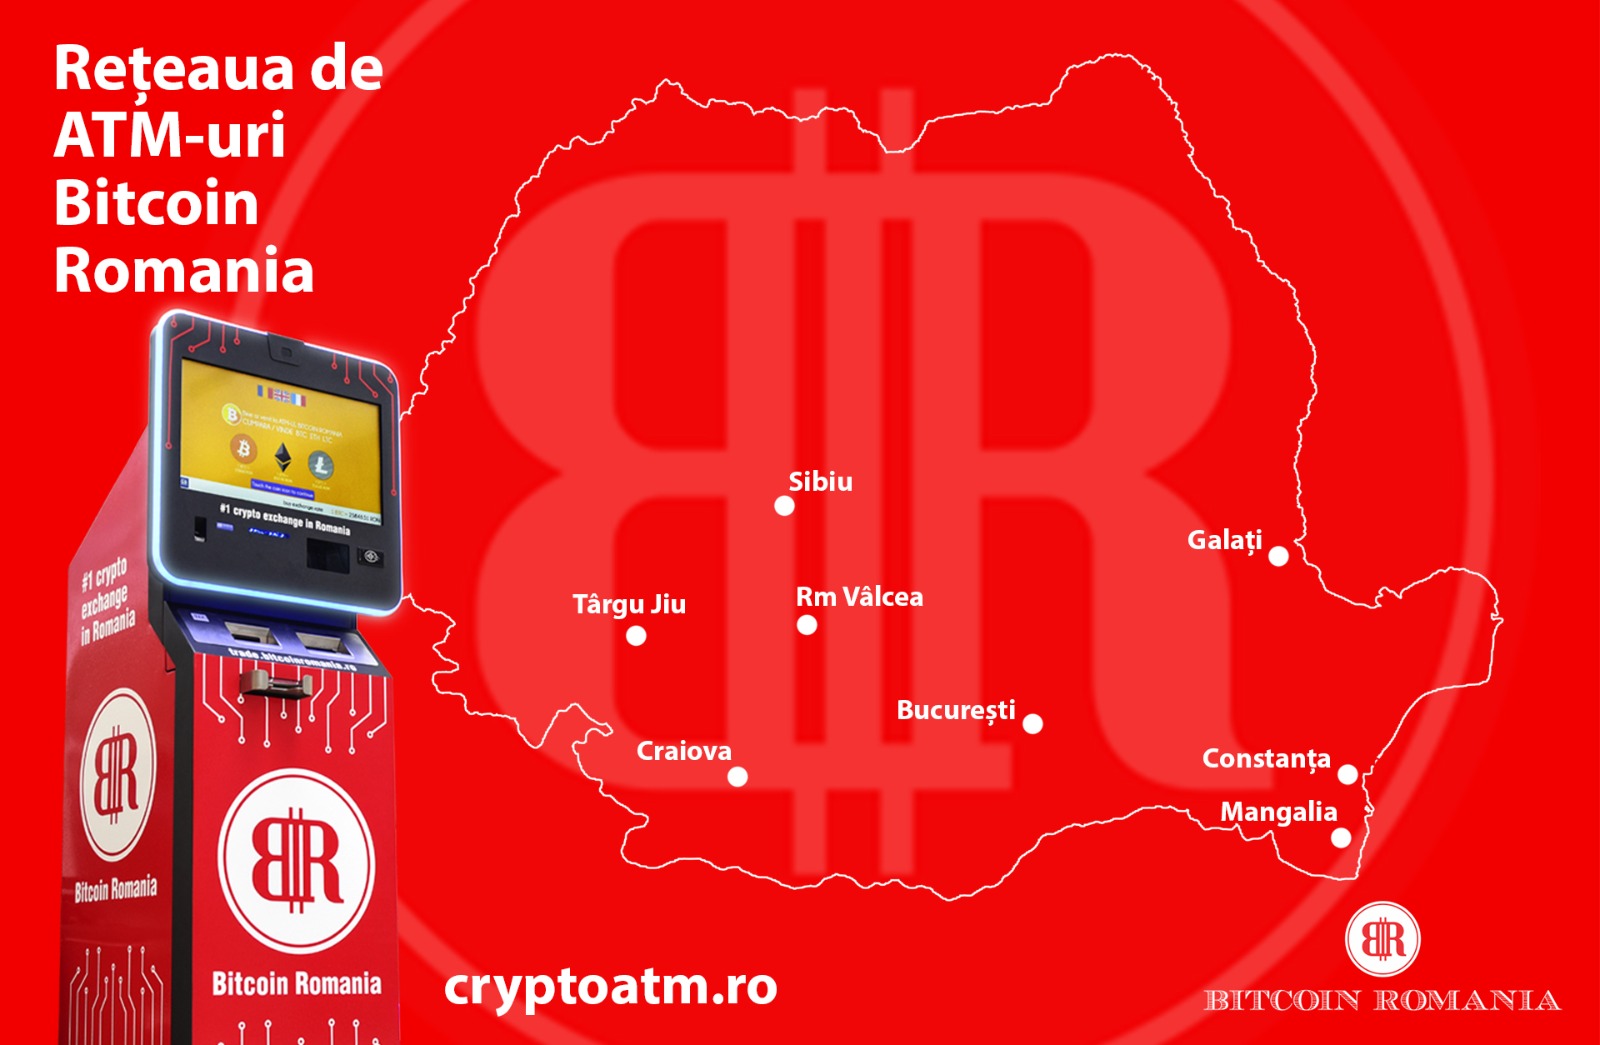 Bitcoin Romania ATMs